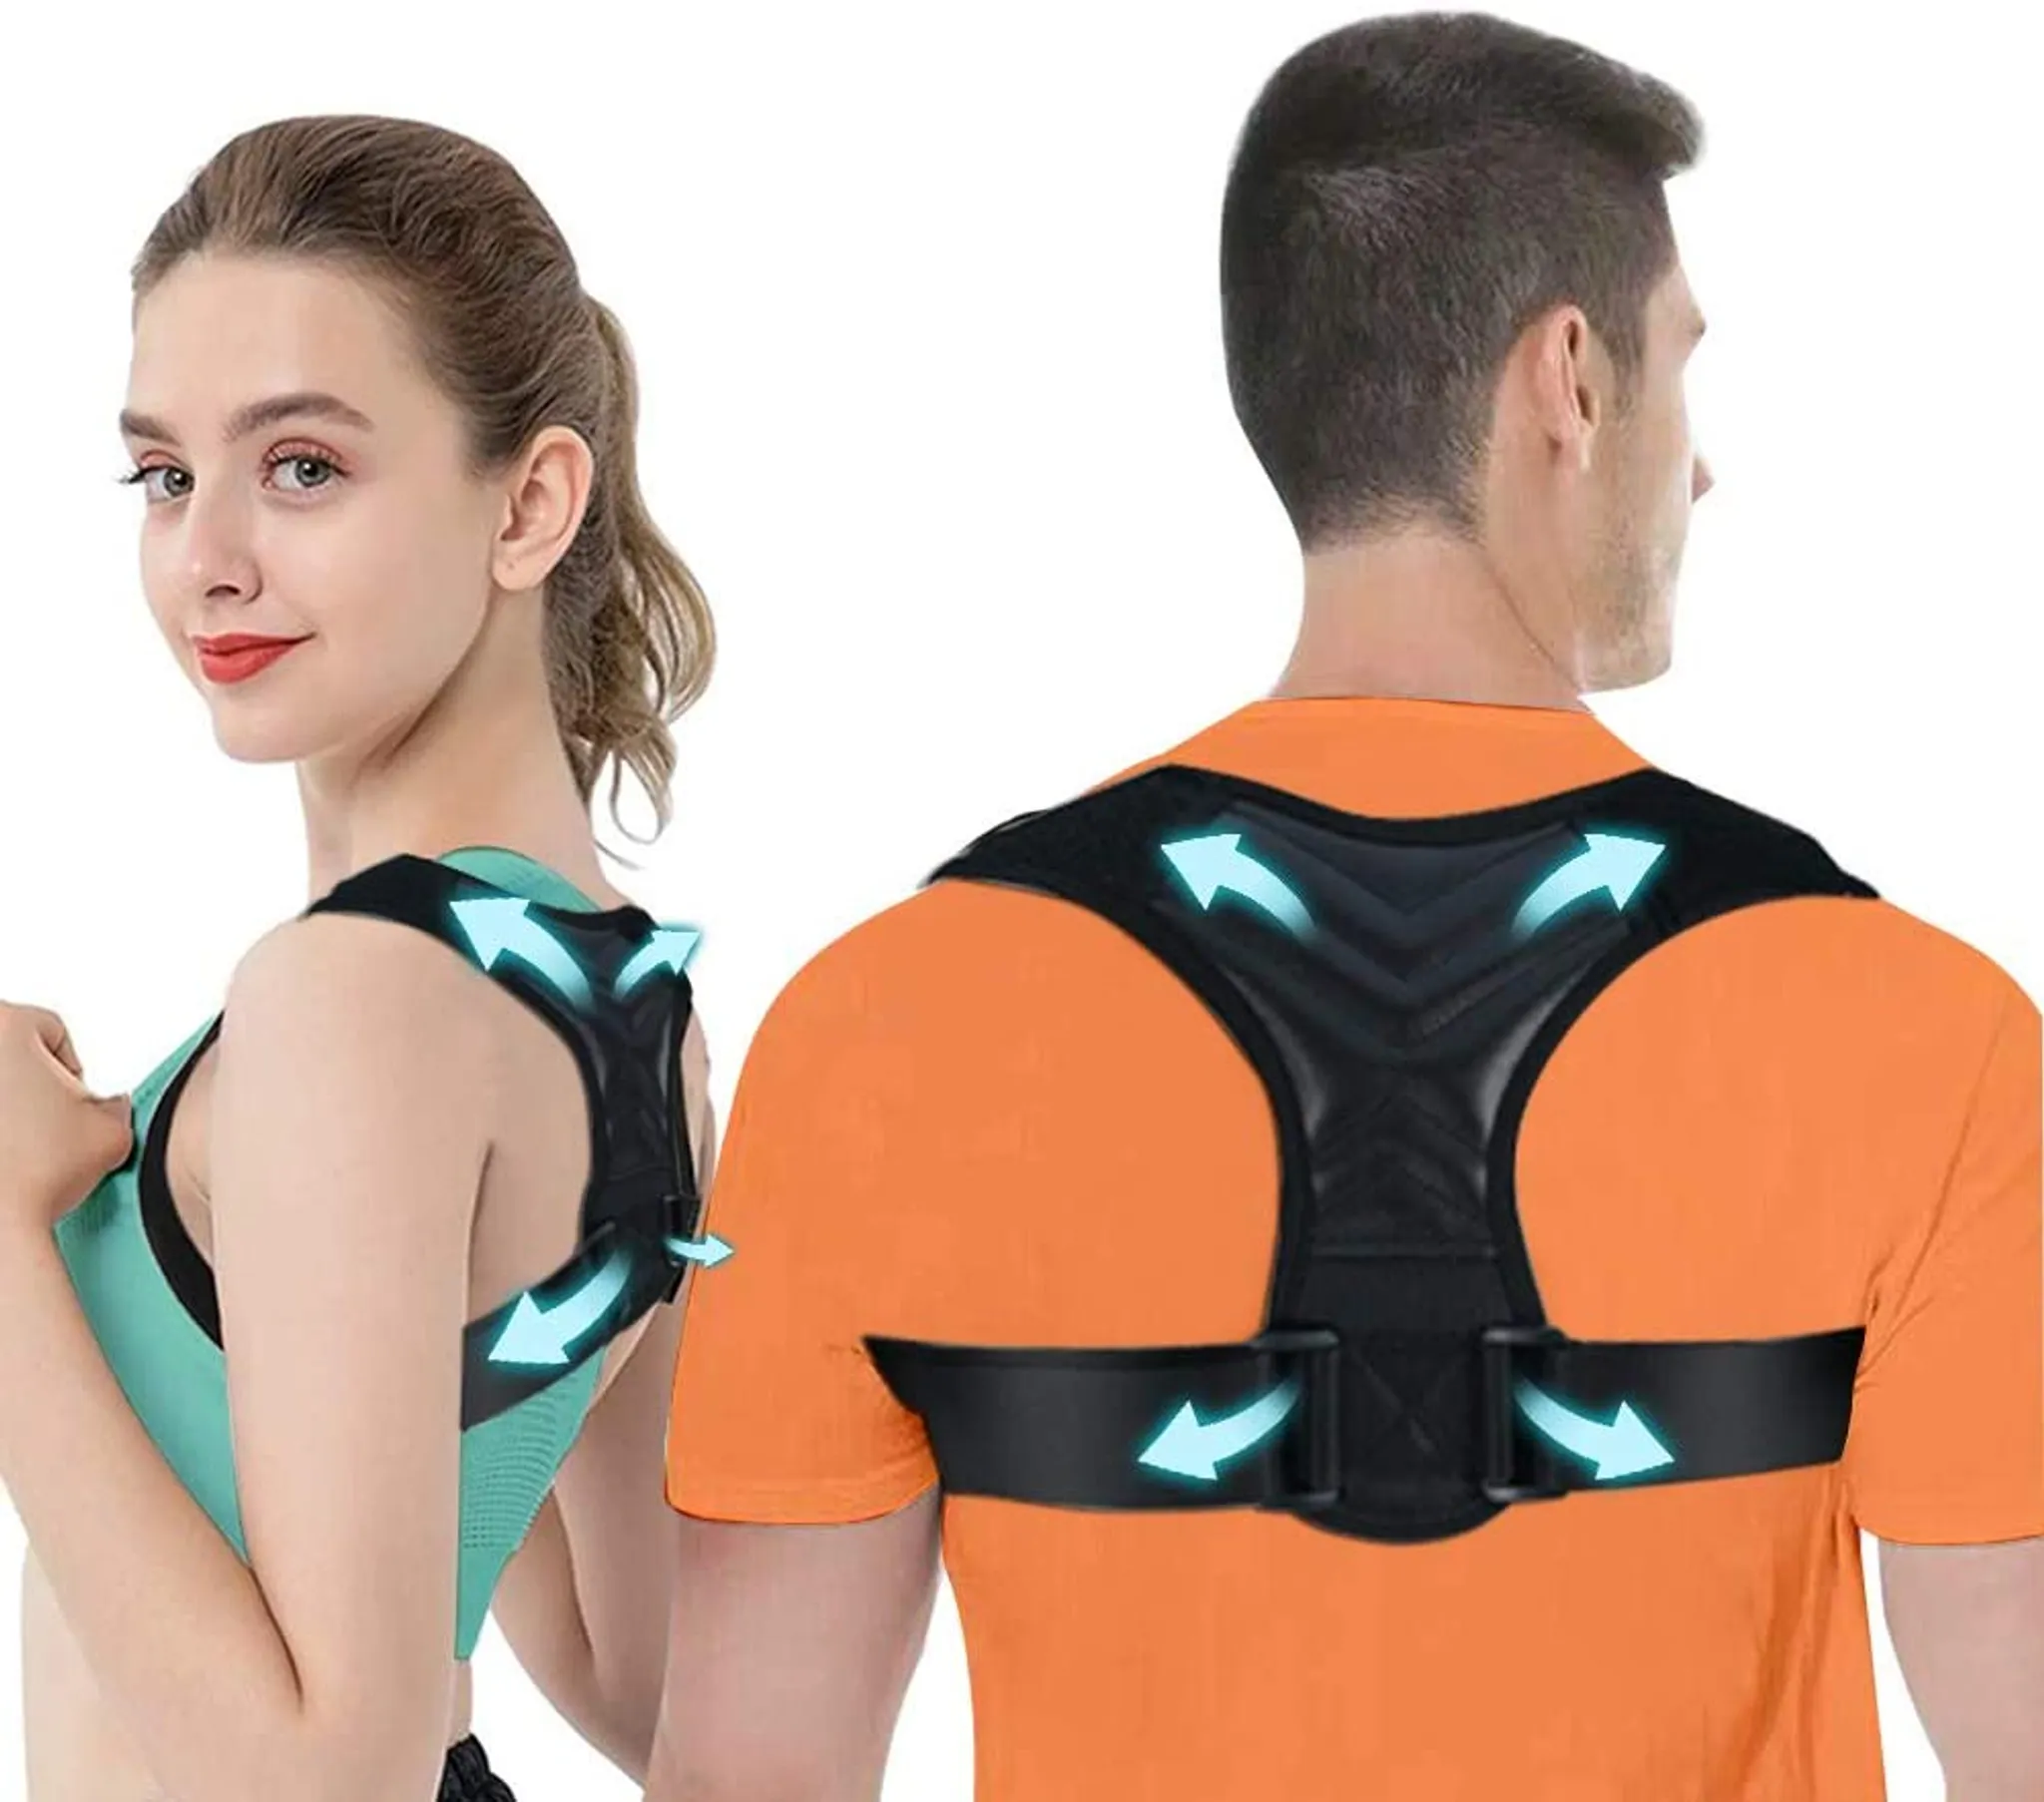 Haltungskorrektor Wirbelsäule und Rückenstütze für Nacken Rücken Schultern